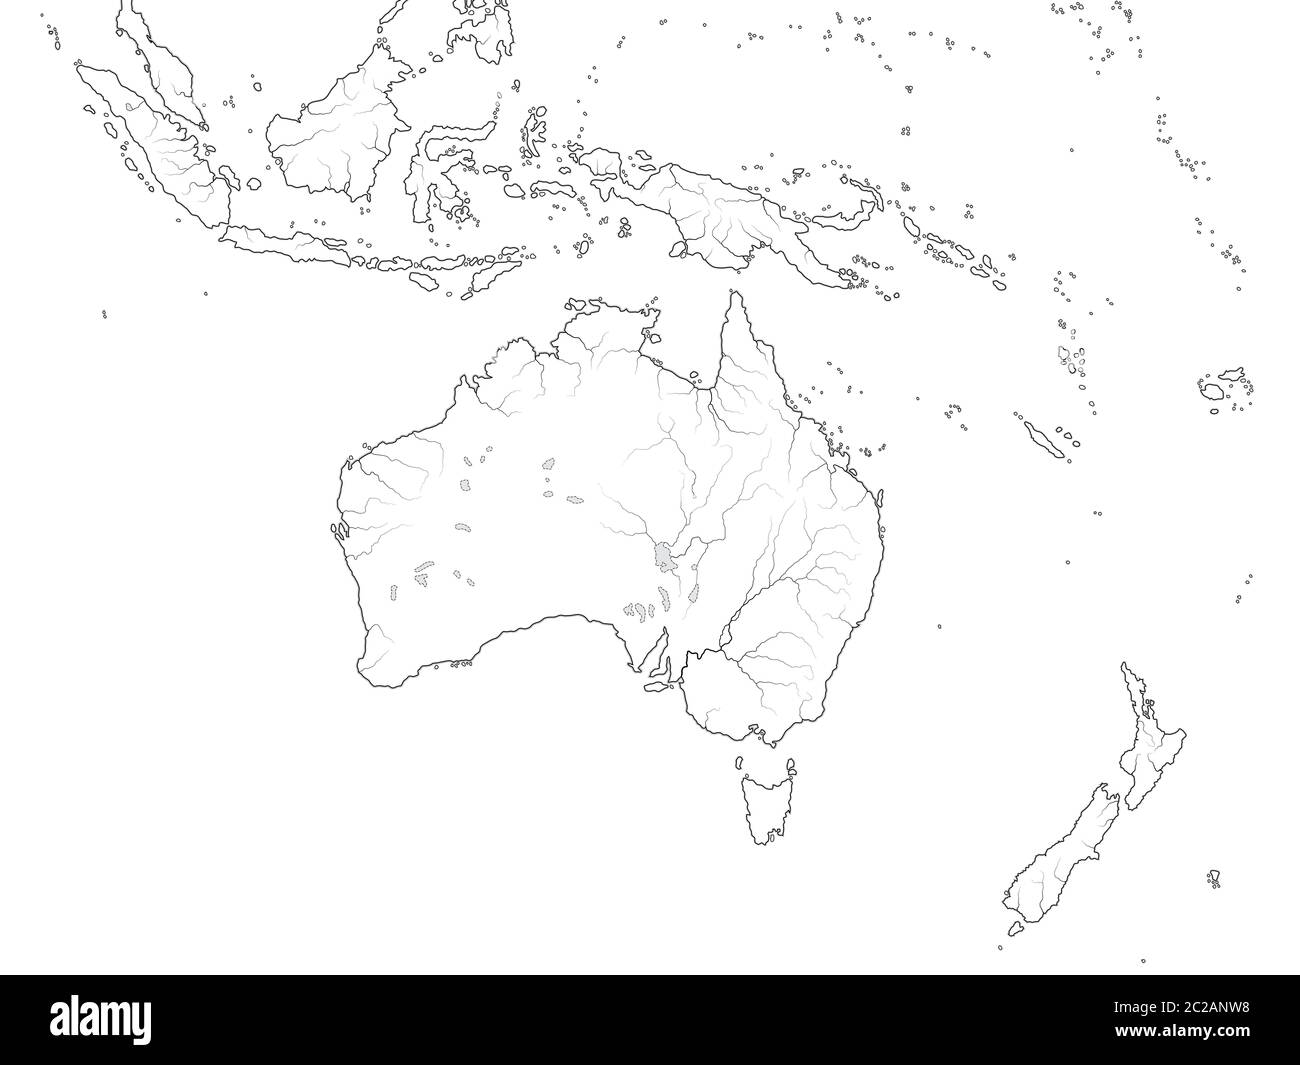 Mappa mondiale DELLA REGIONE DELL'AUSTRALASIA: Australia, Oceania, Indonesia, Polinesia, Oceano Pacifico. Grafico geografico. Foto Stock